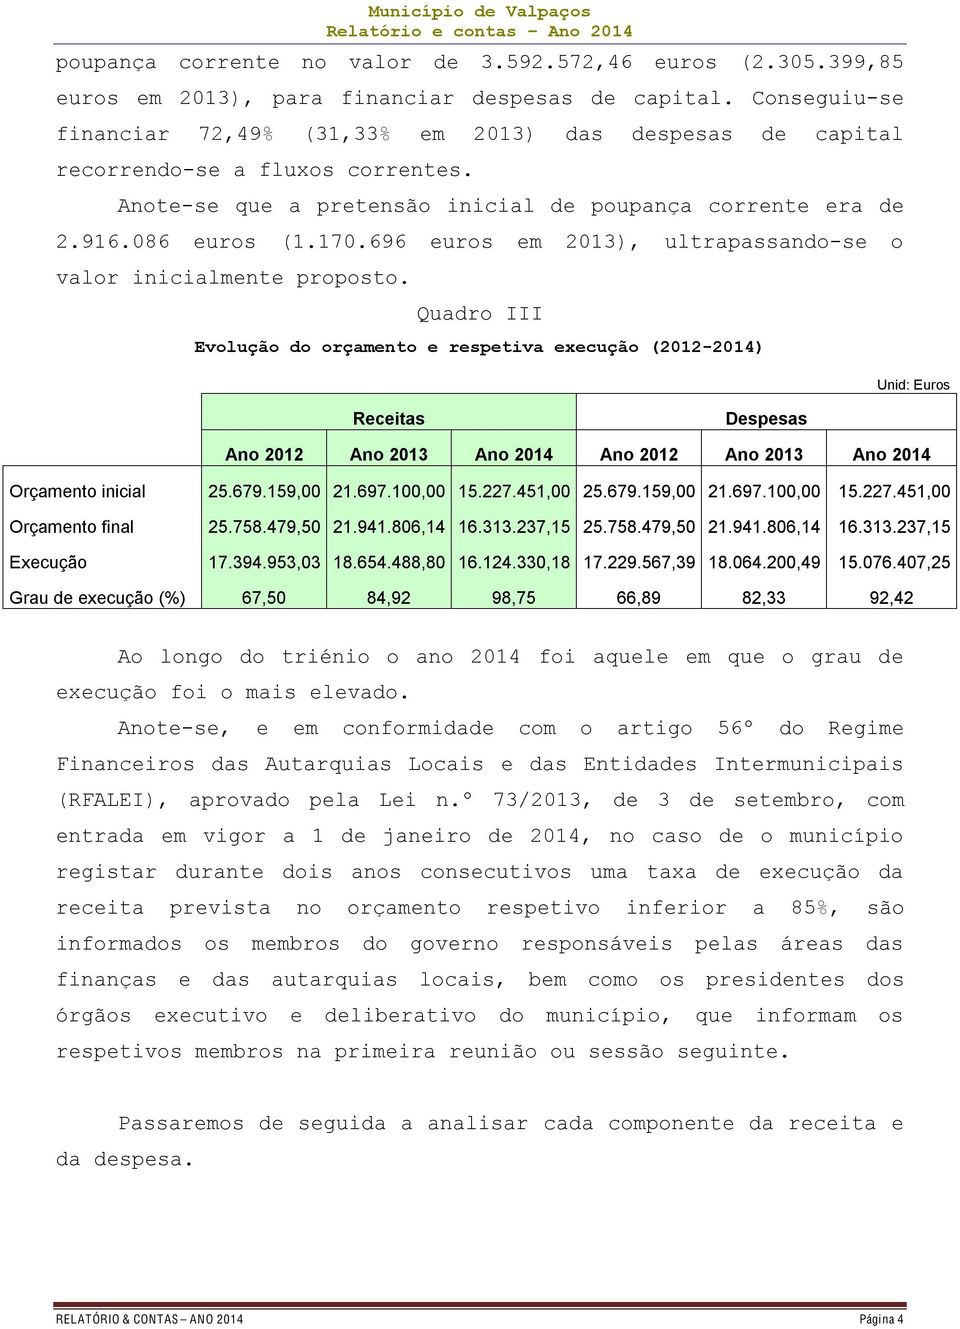 696 euros em 2013), ultrapassando-se o valor inicialmente proposto.